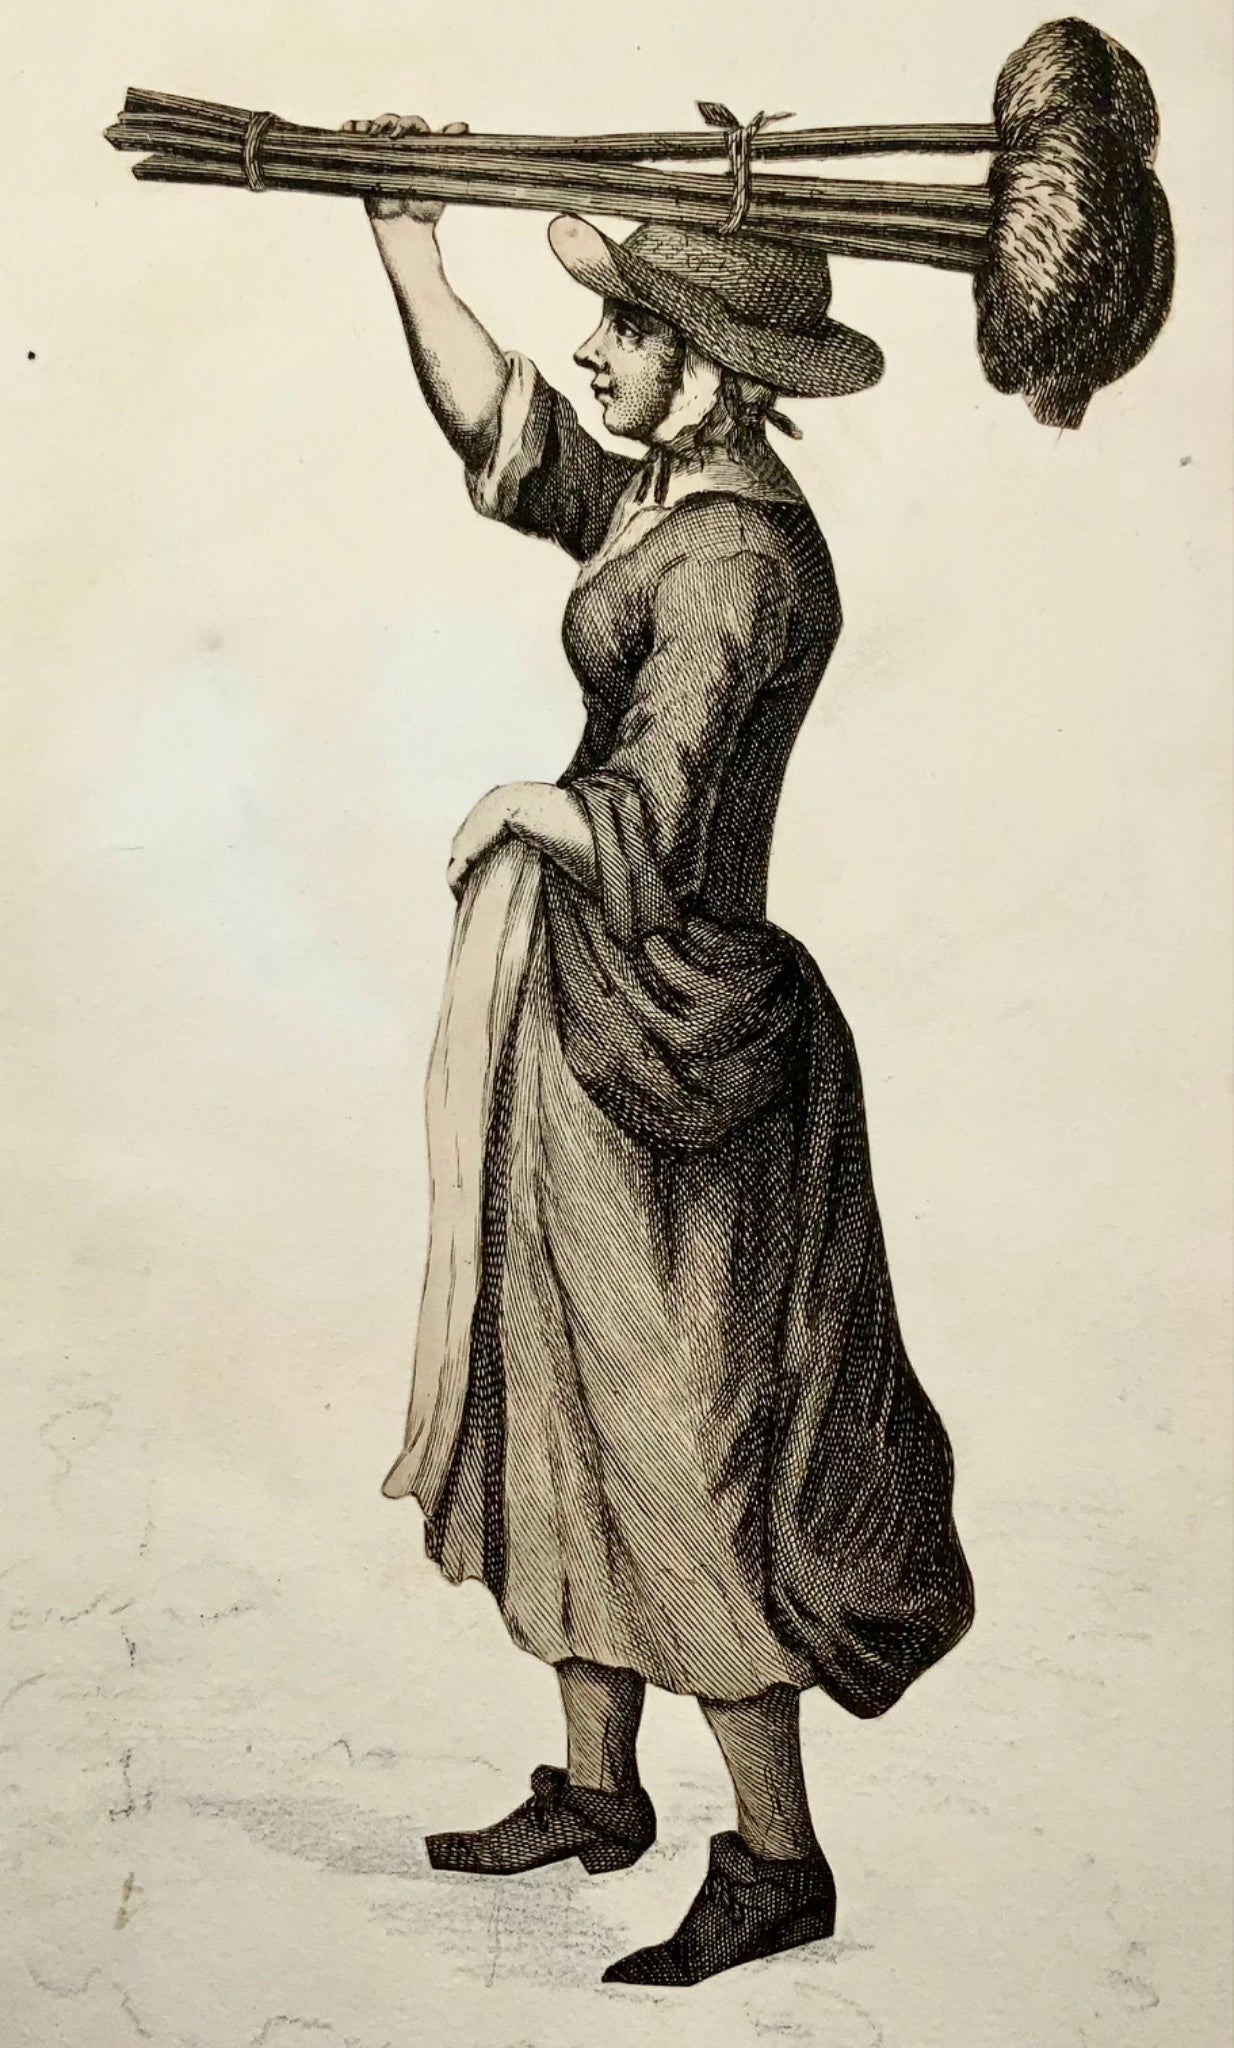 1688 Tempête « Maids buy a Mop », Les Cris de la City de Londres, gravure, métiers